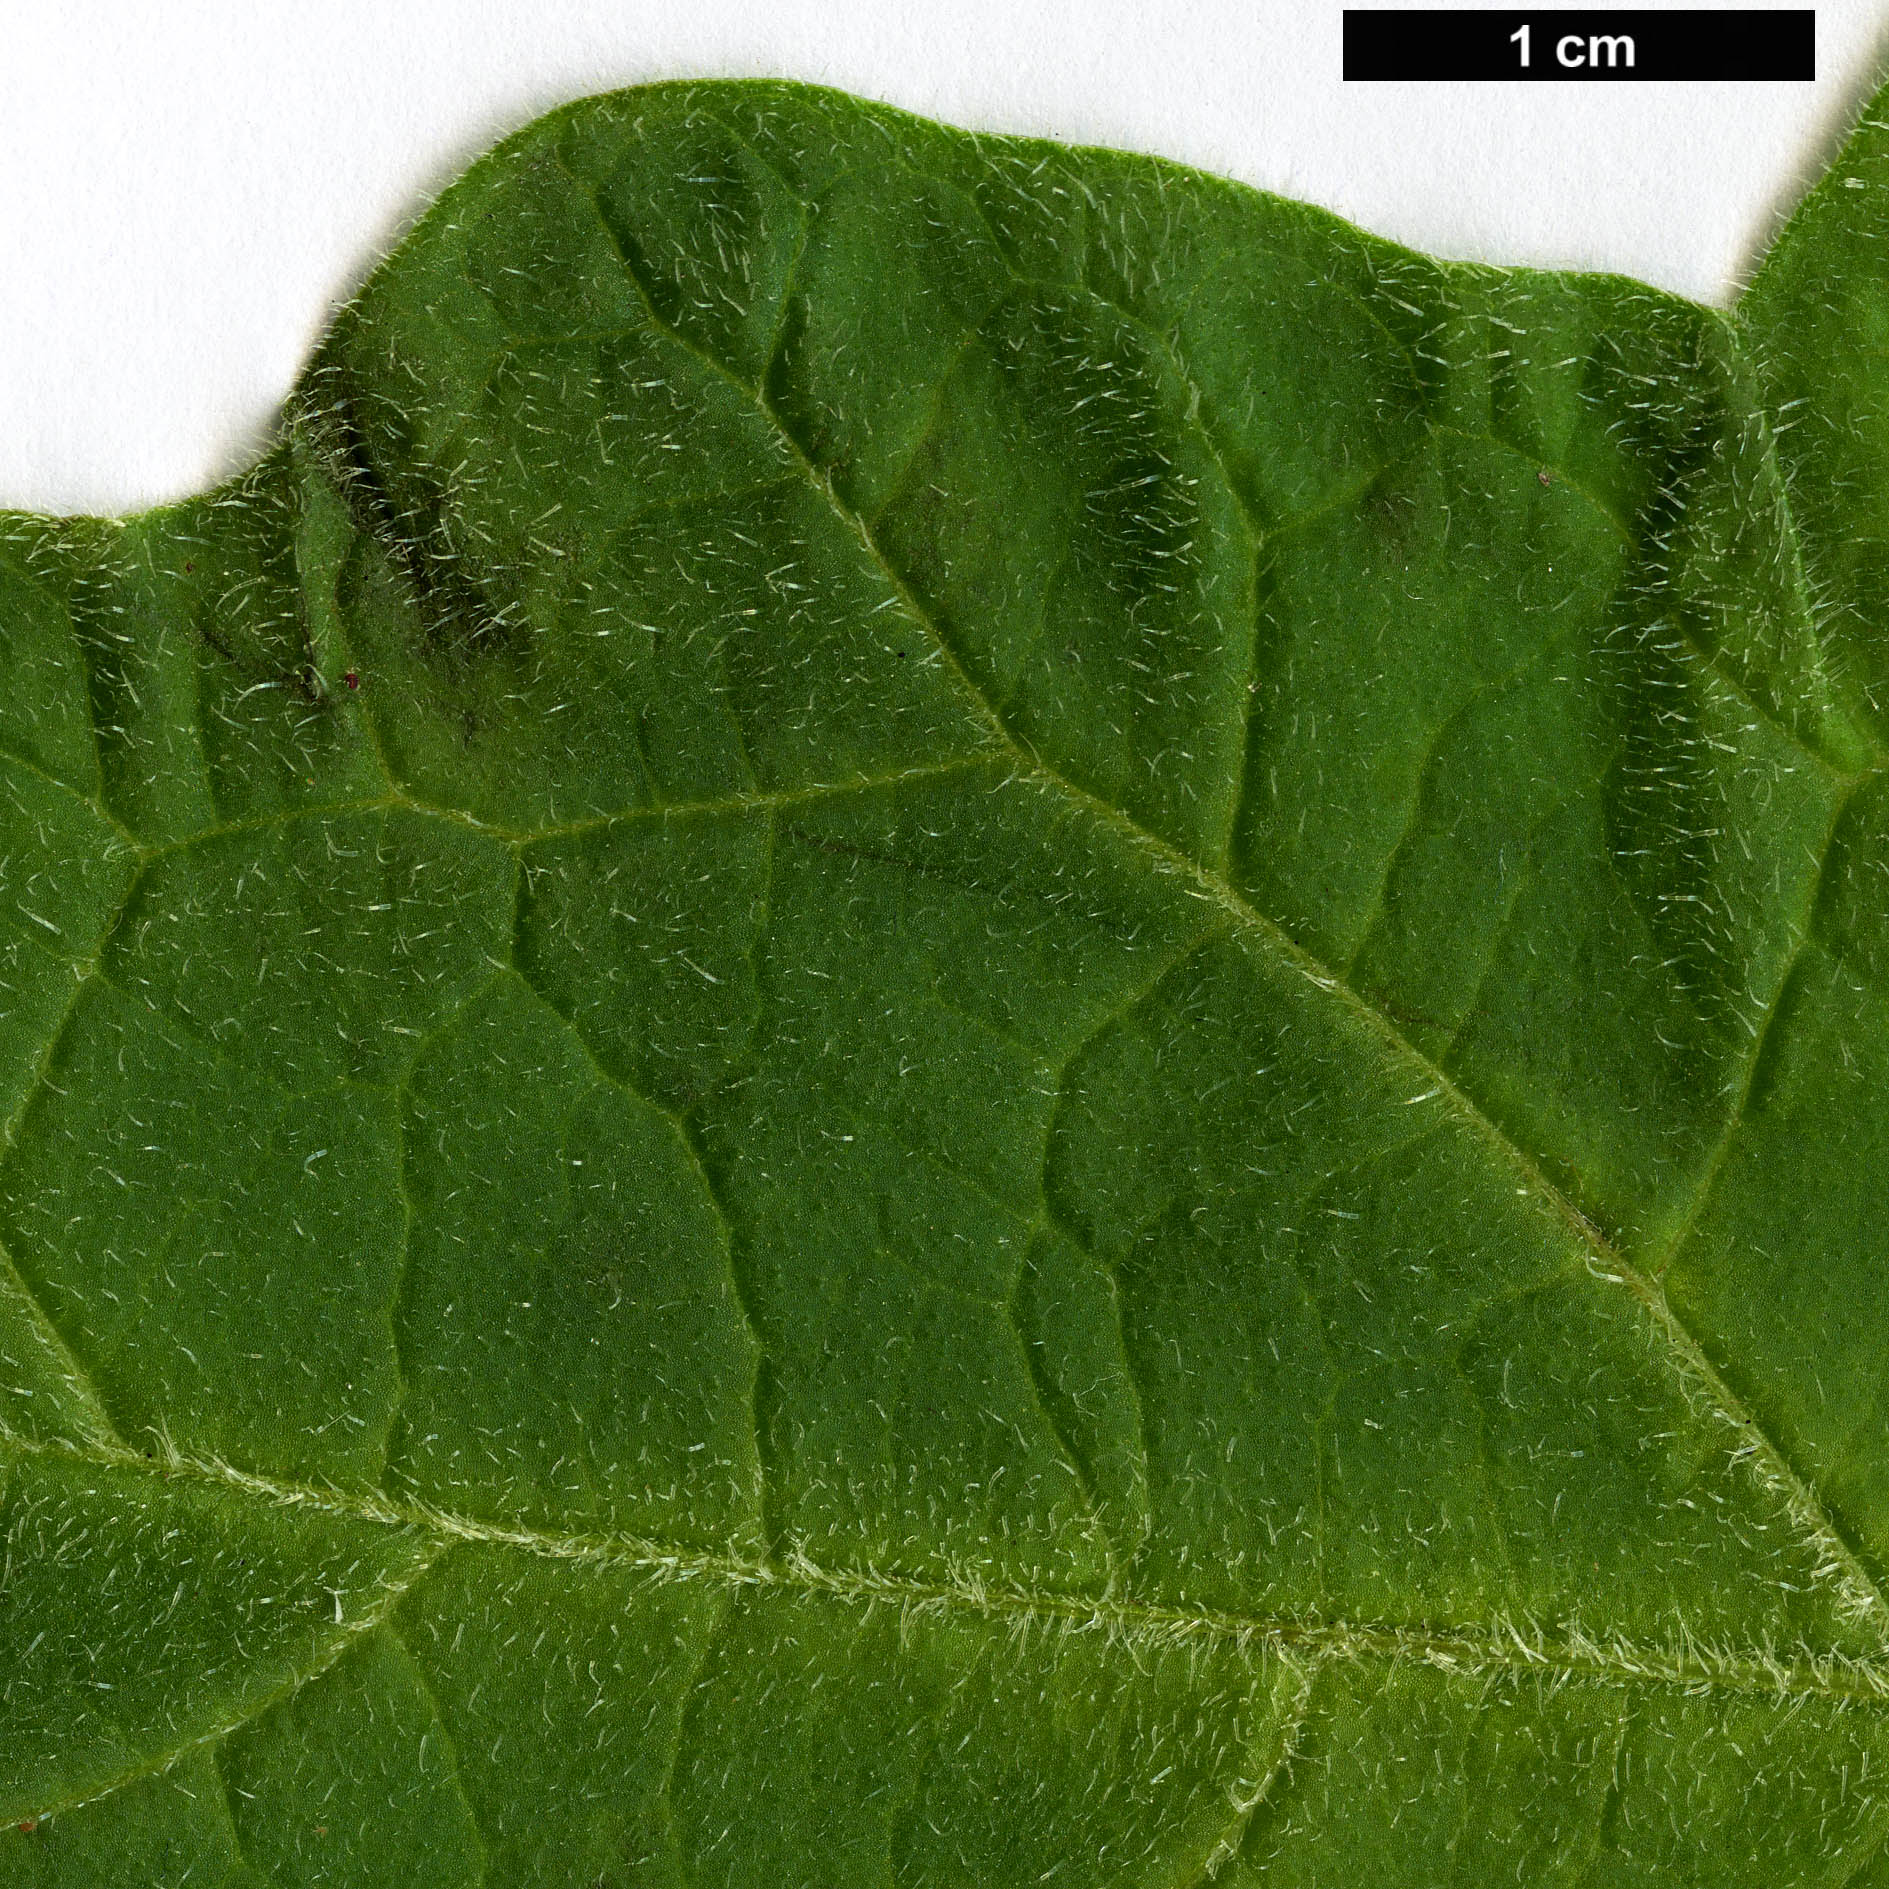 High resolution image: Family: Solanaceae - Genus: Brugmansia - Taxon: sanguinea